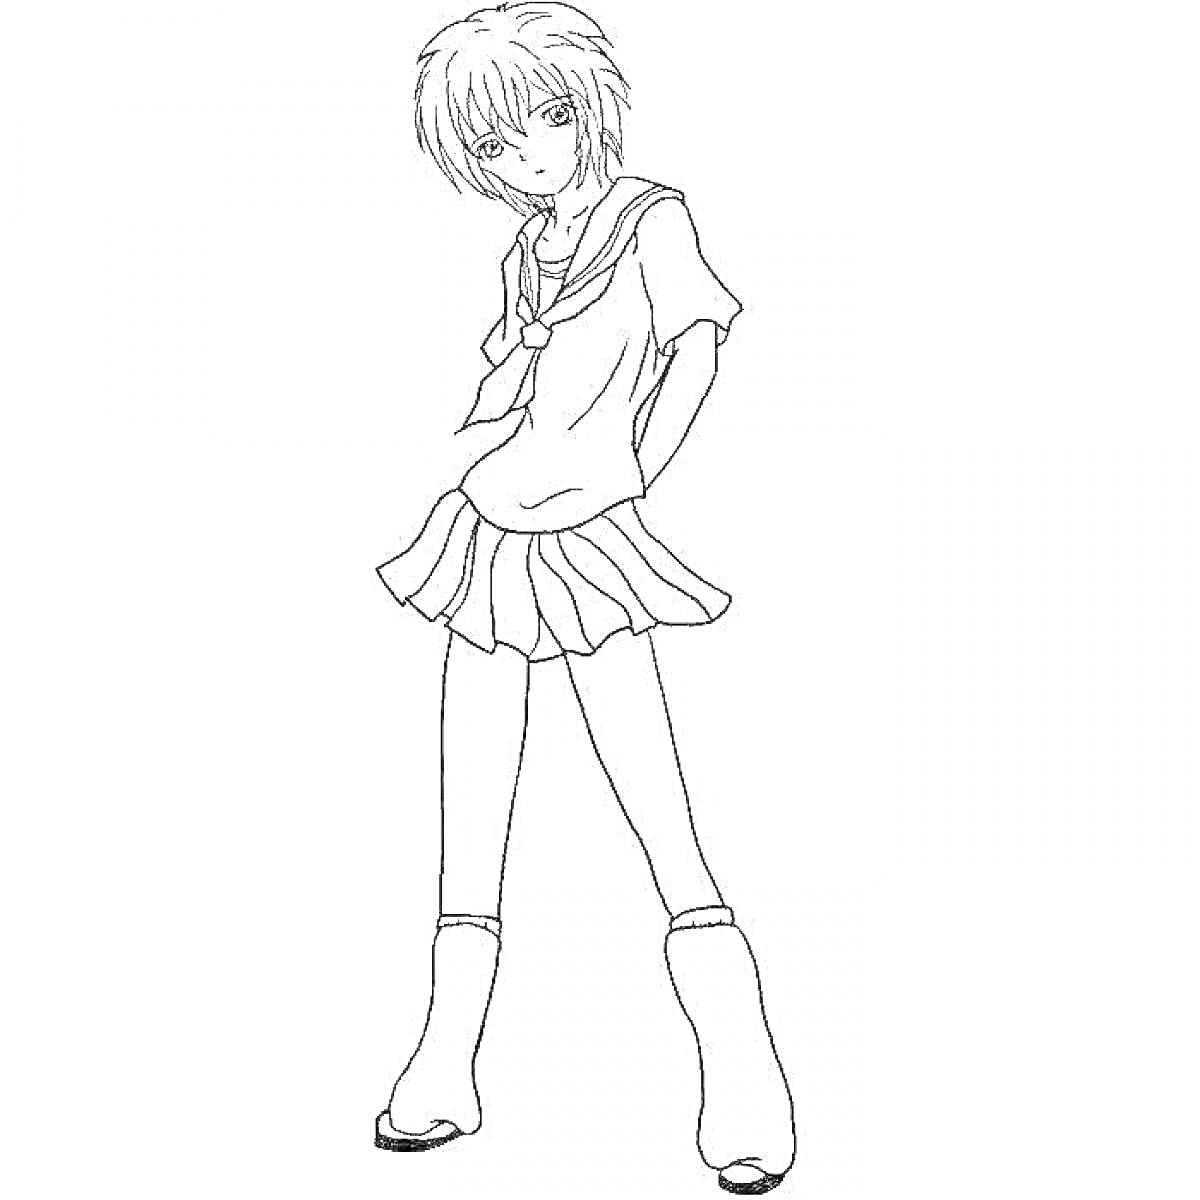 Раскраска Аниме персонаж в школьной форме с короткими волосами, стоящий в полный рост